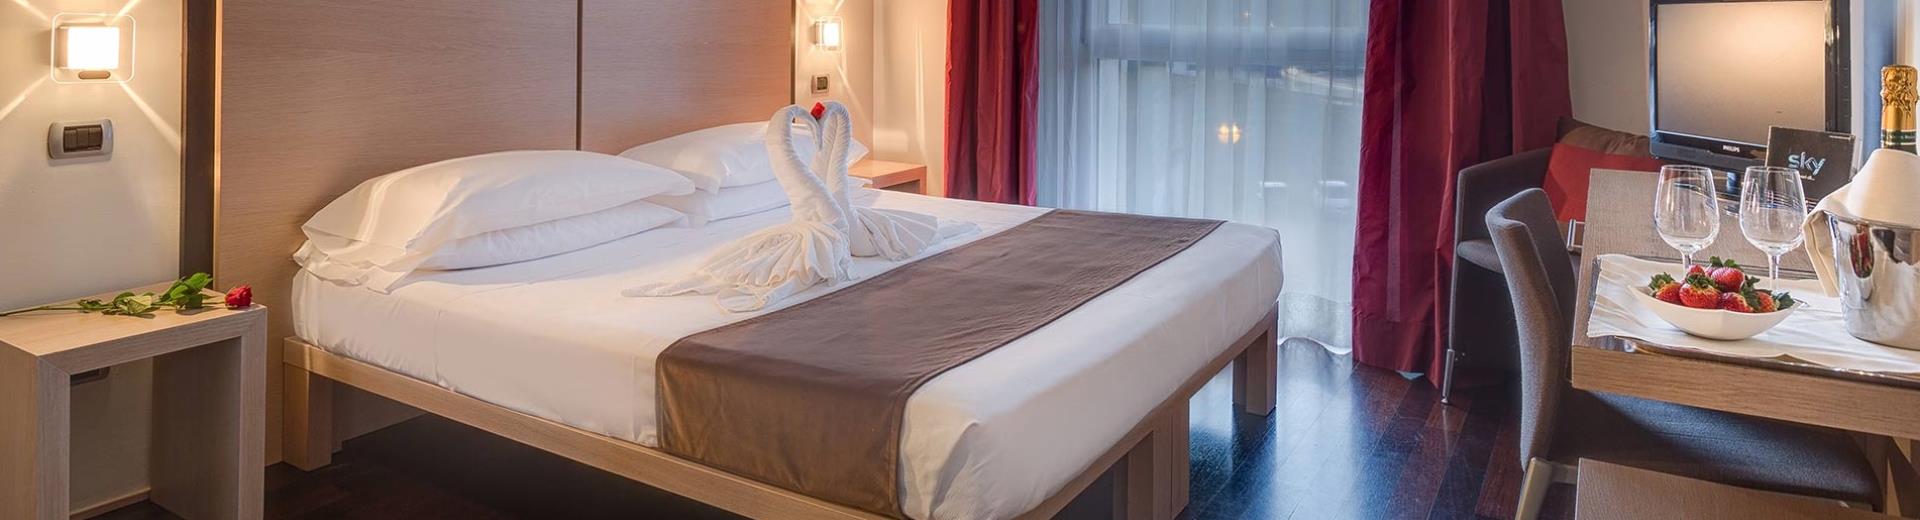 Scopri le camere del nostro hotel a Siena e vivi un soggiorno di comfort